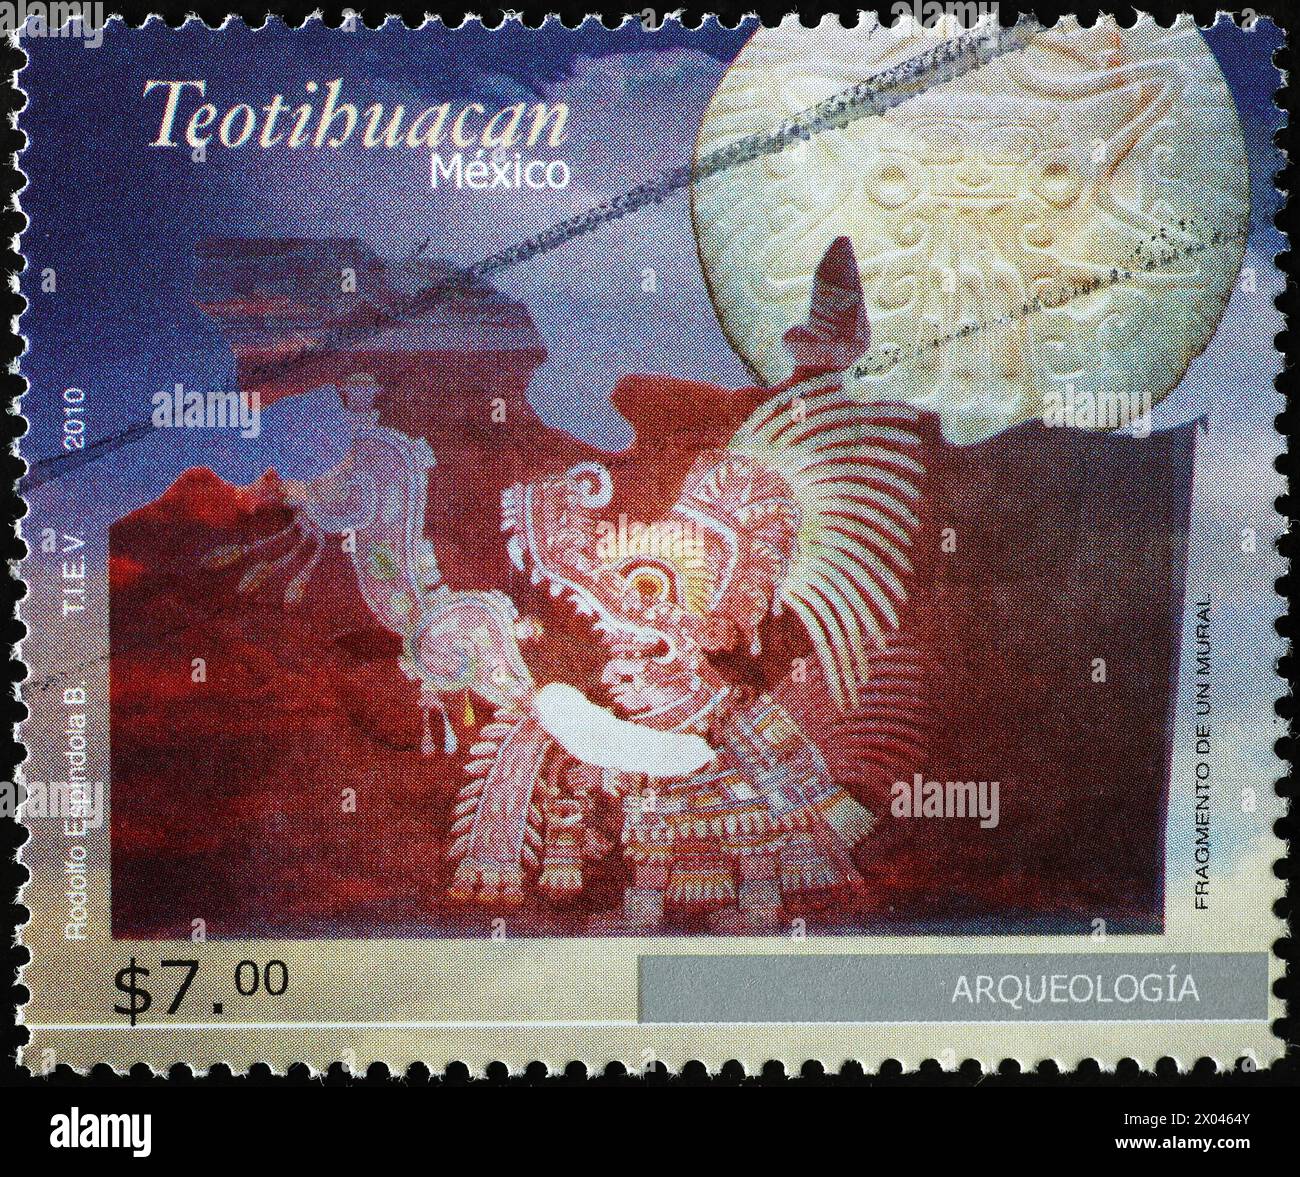 Dettaglio di un murale a Teotihuacan su francobollo messicano Foto Stock